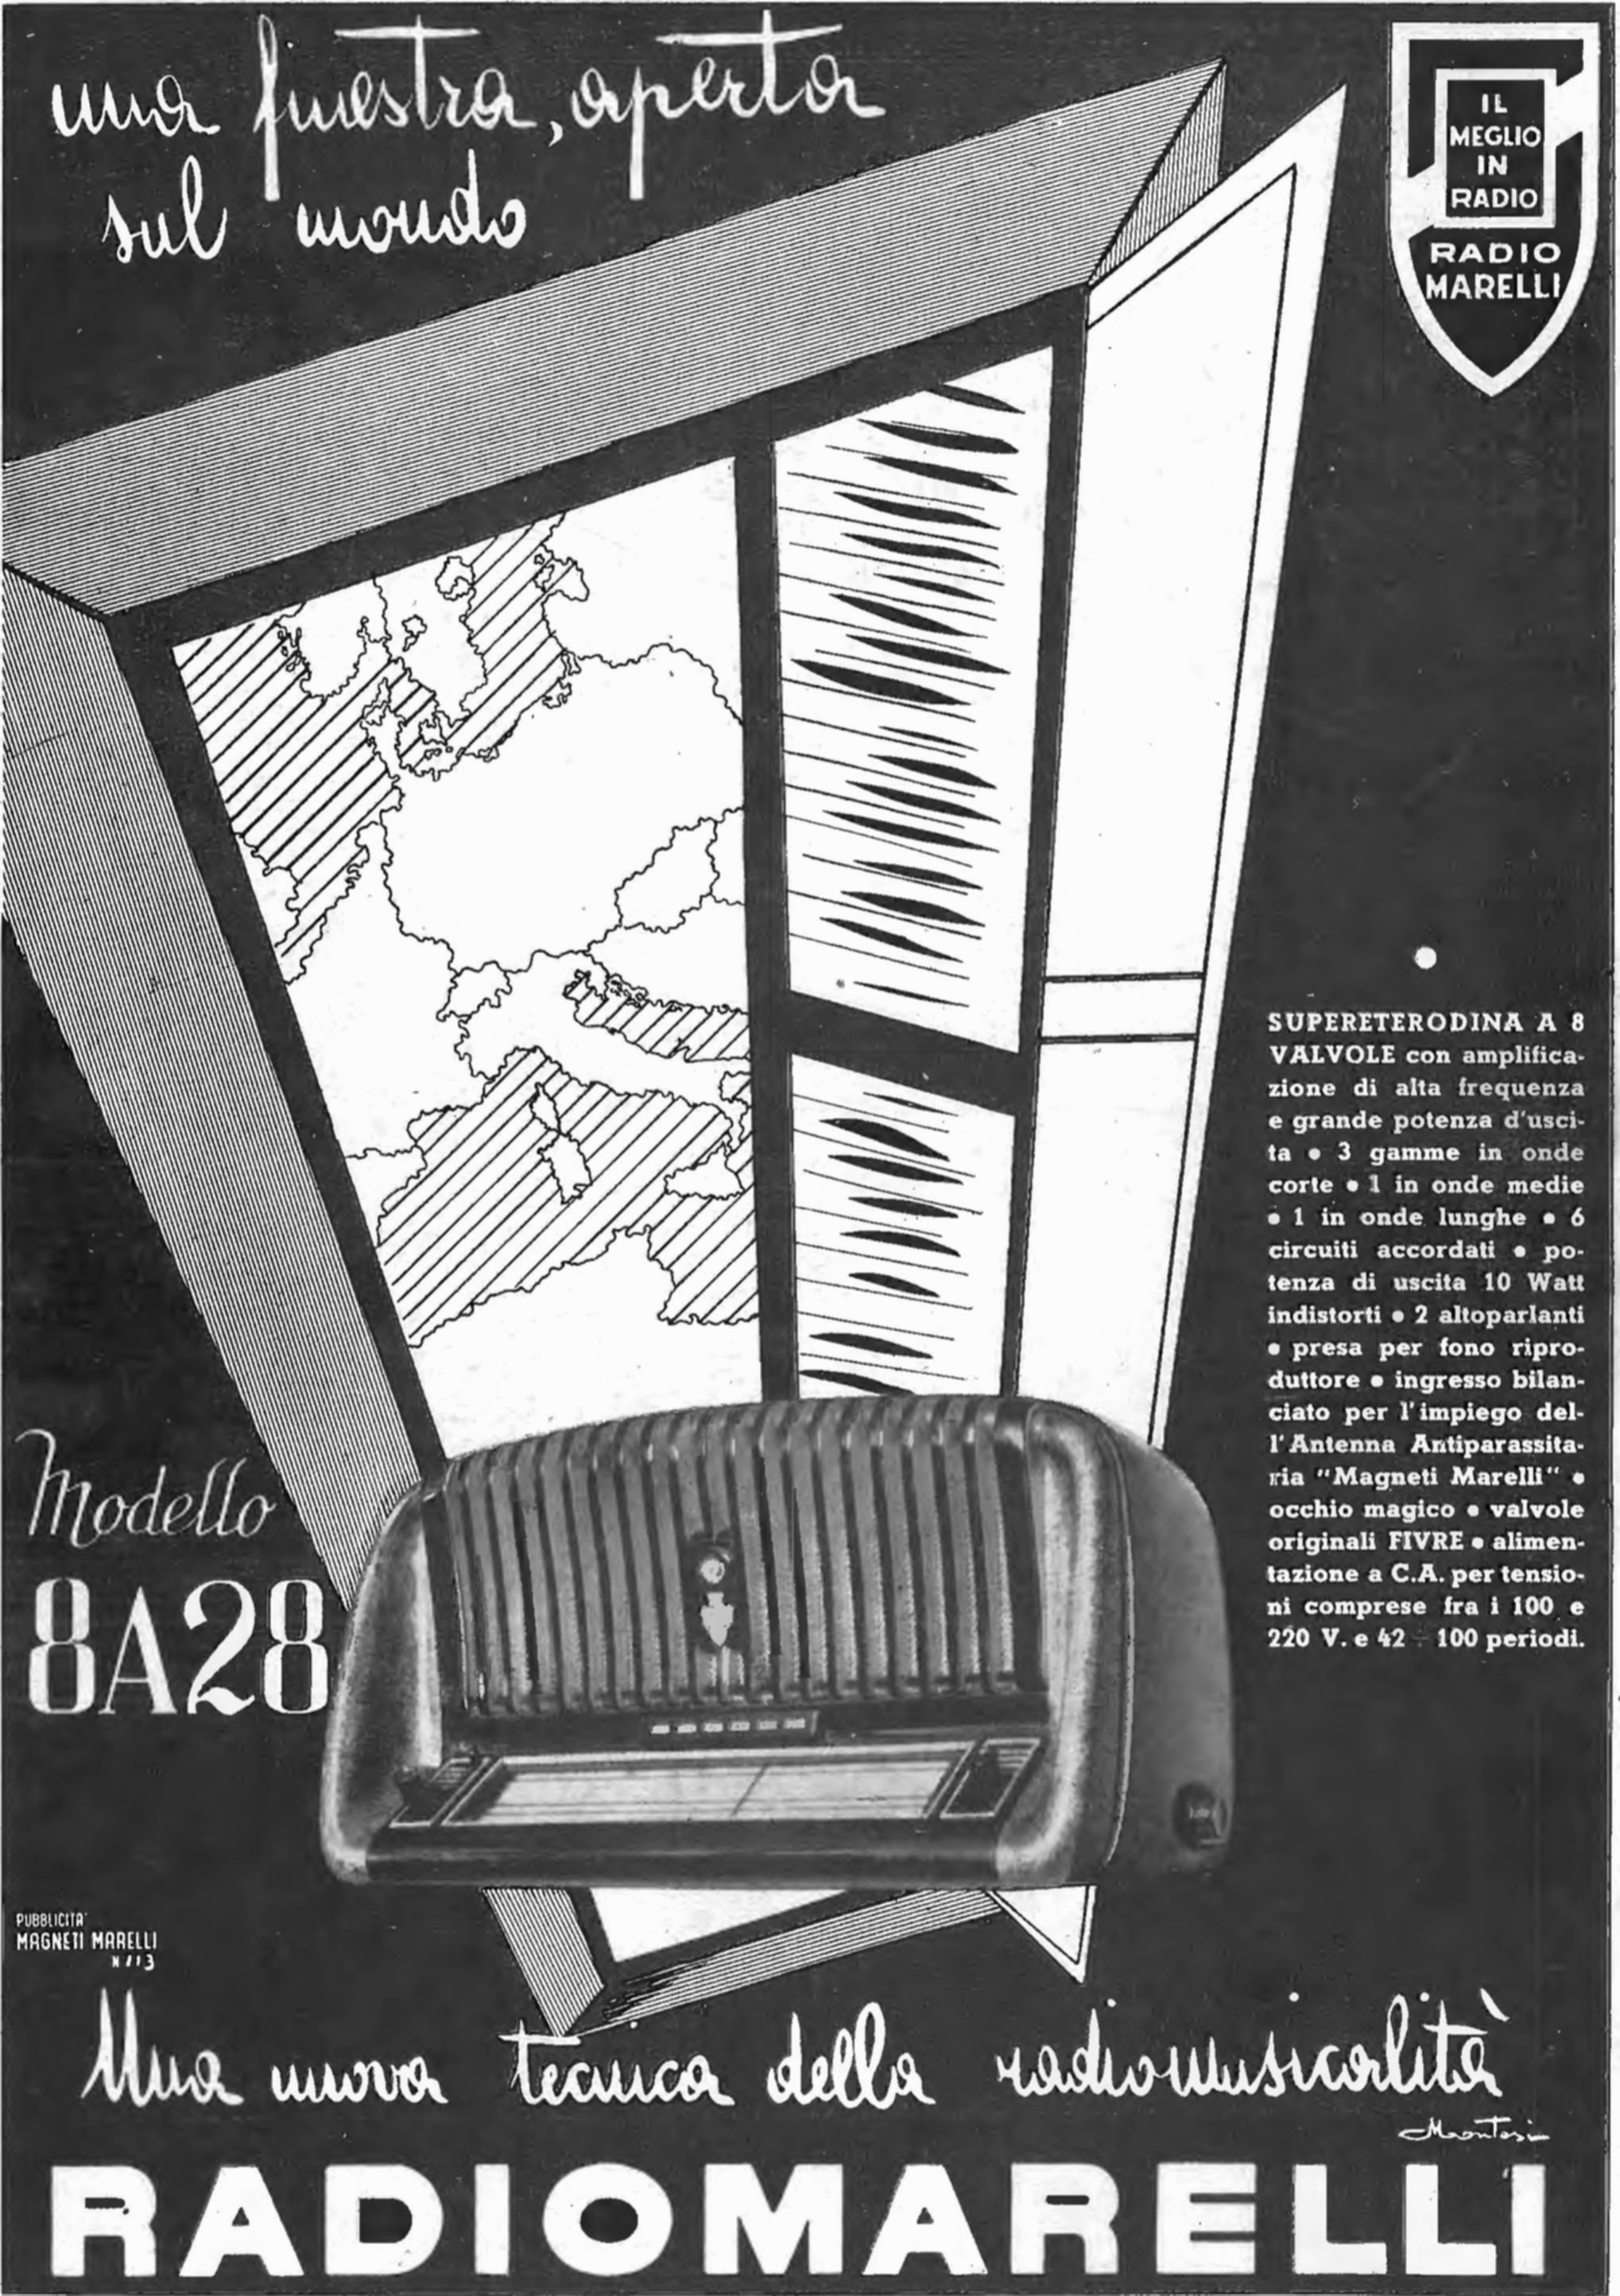 Radiomarelli 1944 496.jpg